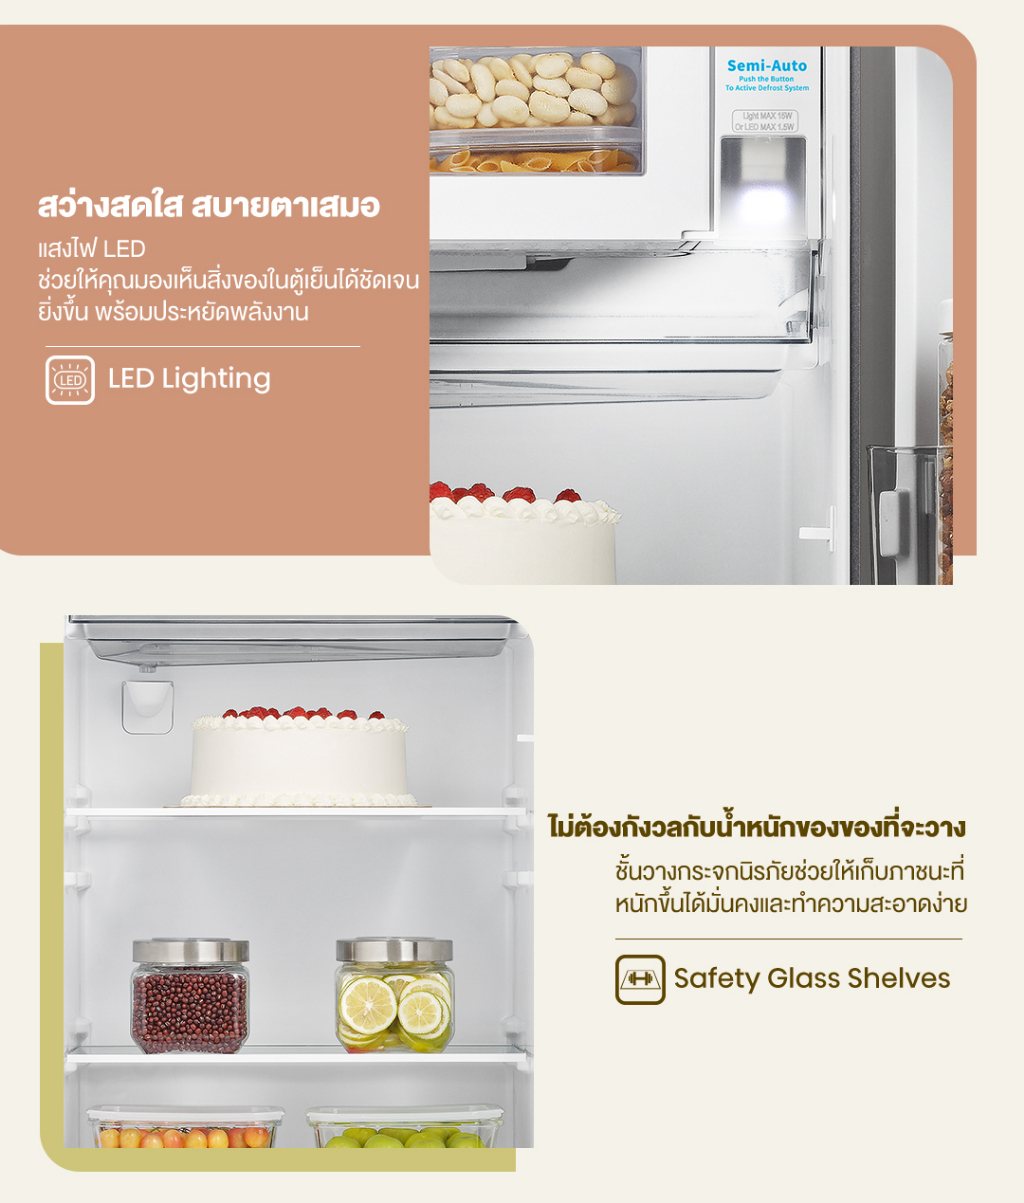 เกี่ยวกับ Hisense ตู้เย็น 1 ประตู 6.5Q/ 184 ลิตร รุ่น RR229D4AD1 Black Color